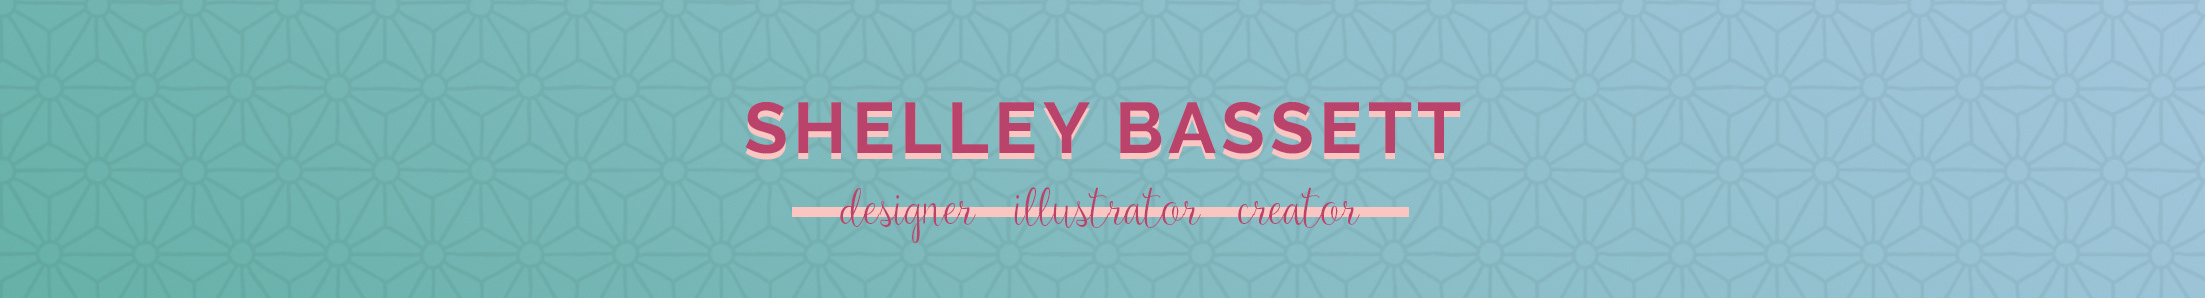 Shelley Bassett's profile banner